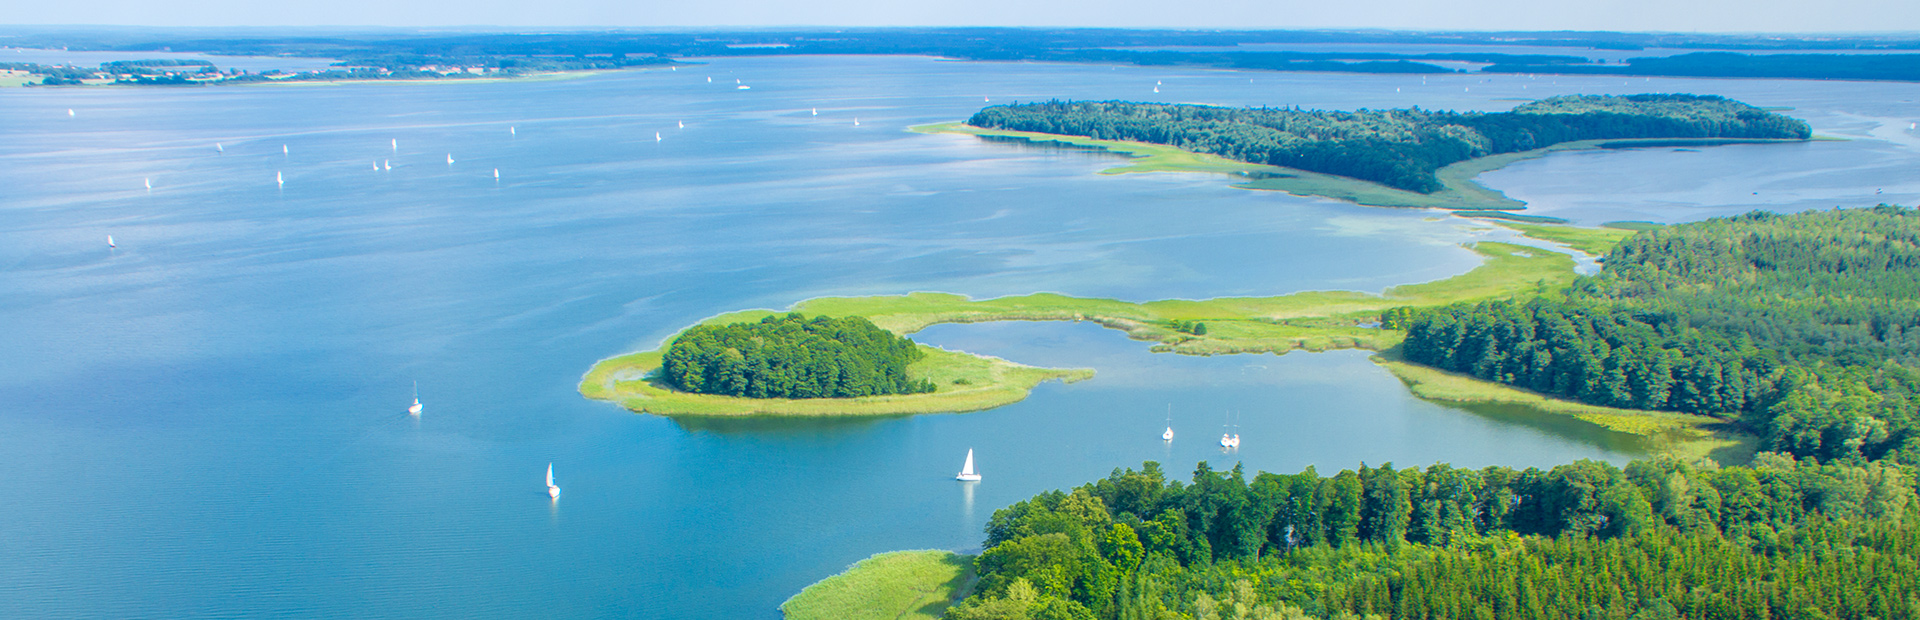 Zdjęcie z lotu ptaka przedstawia jezioro w porze letniej, na którym pływają liczne białe łódki. Na jeziorze widoczne są dwie wyspy.